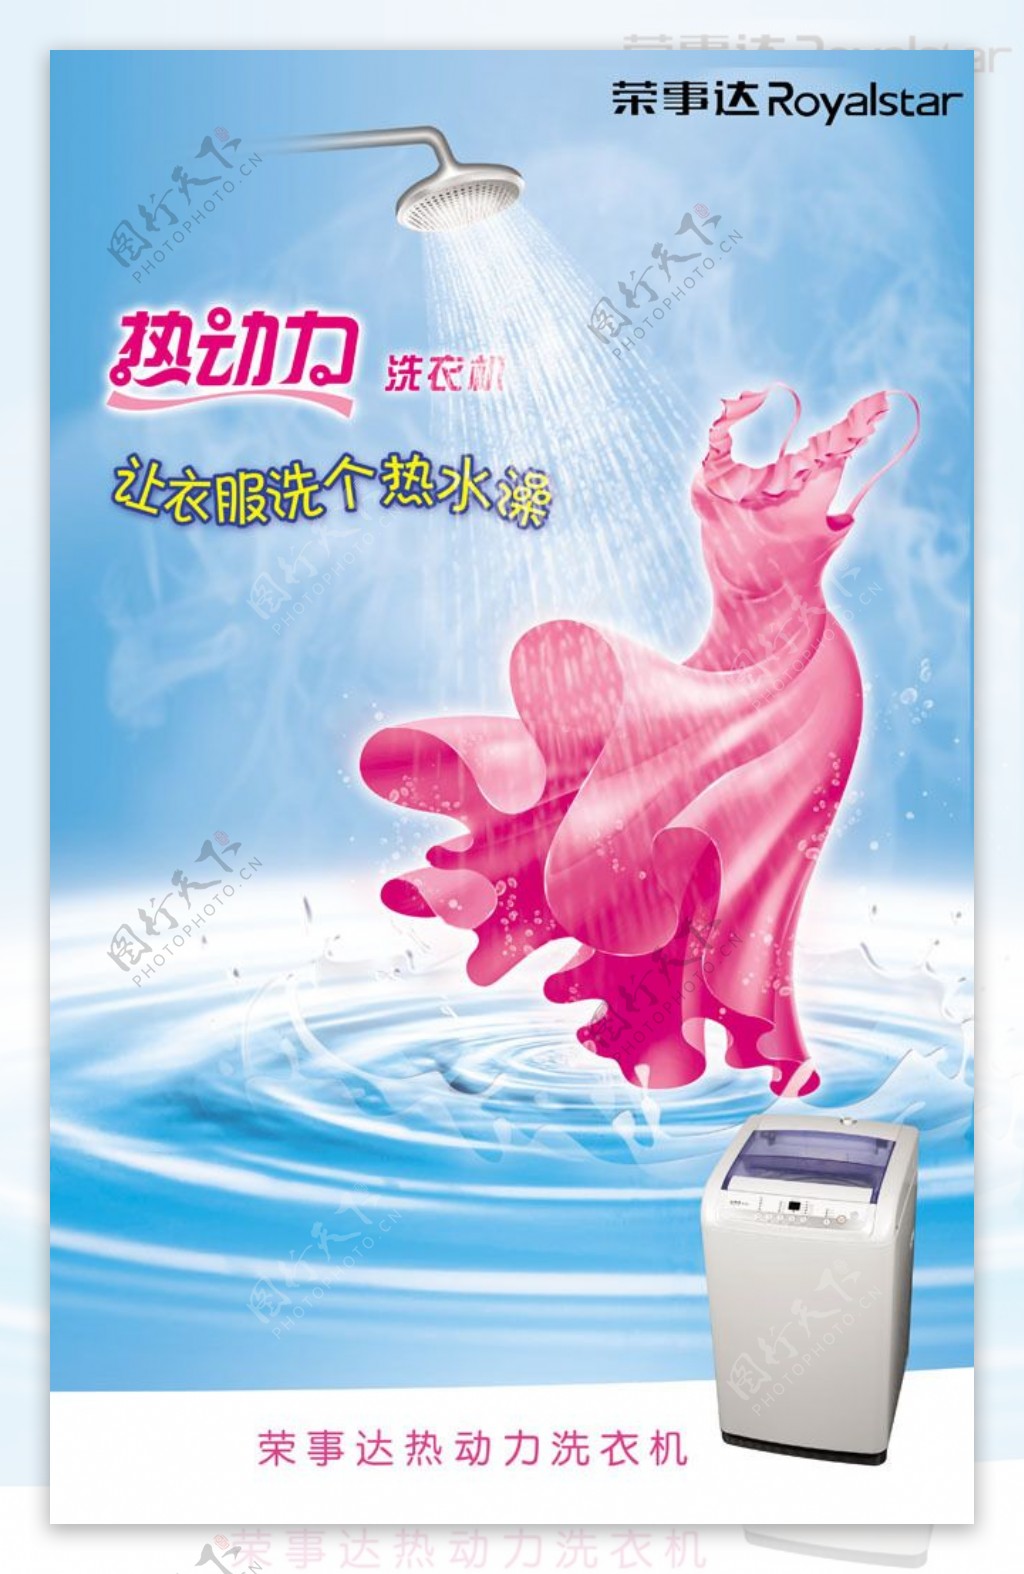 荣事达动力洗衣机创意广告图片